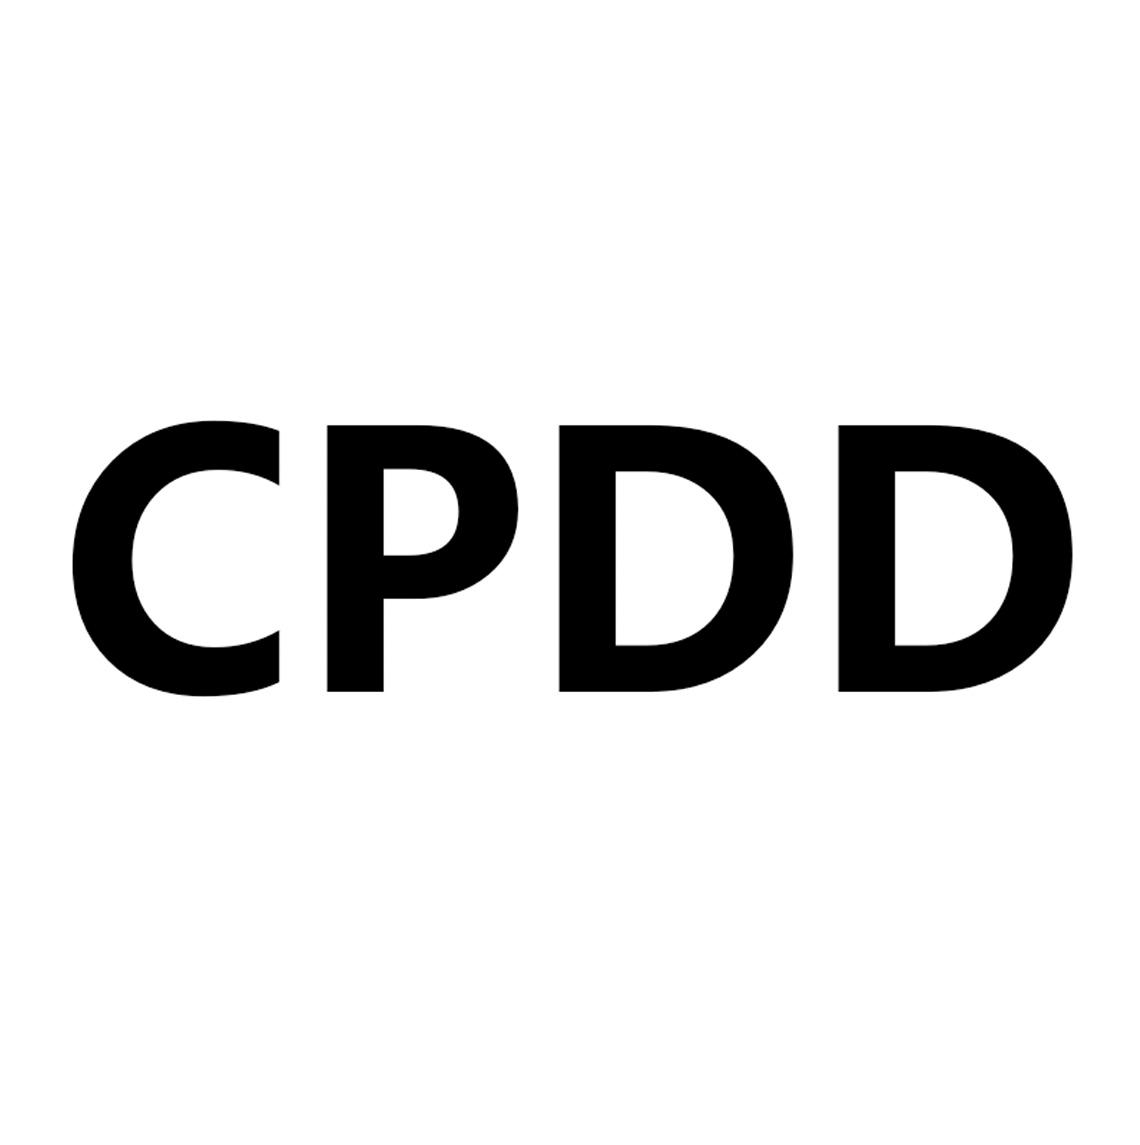 cpdd 商标公告